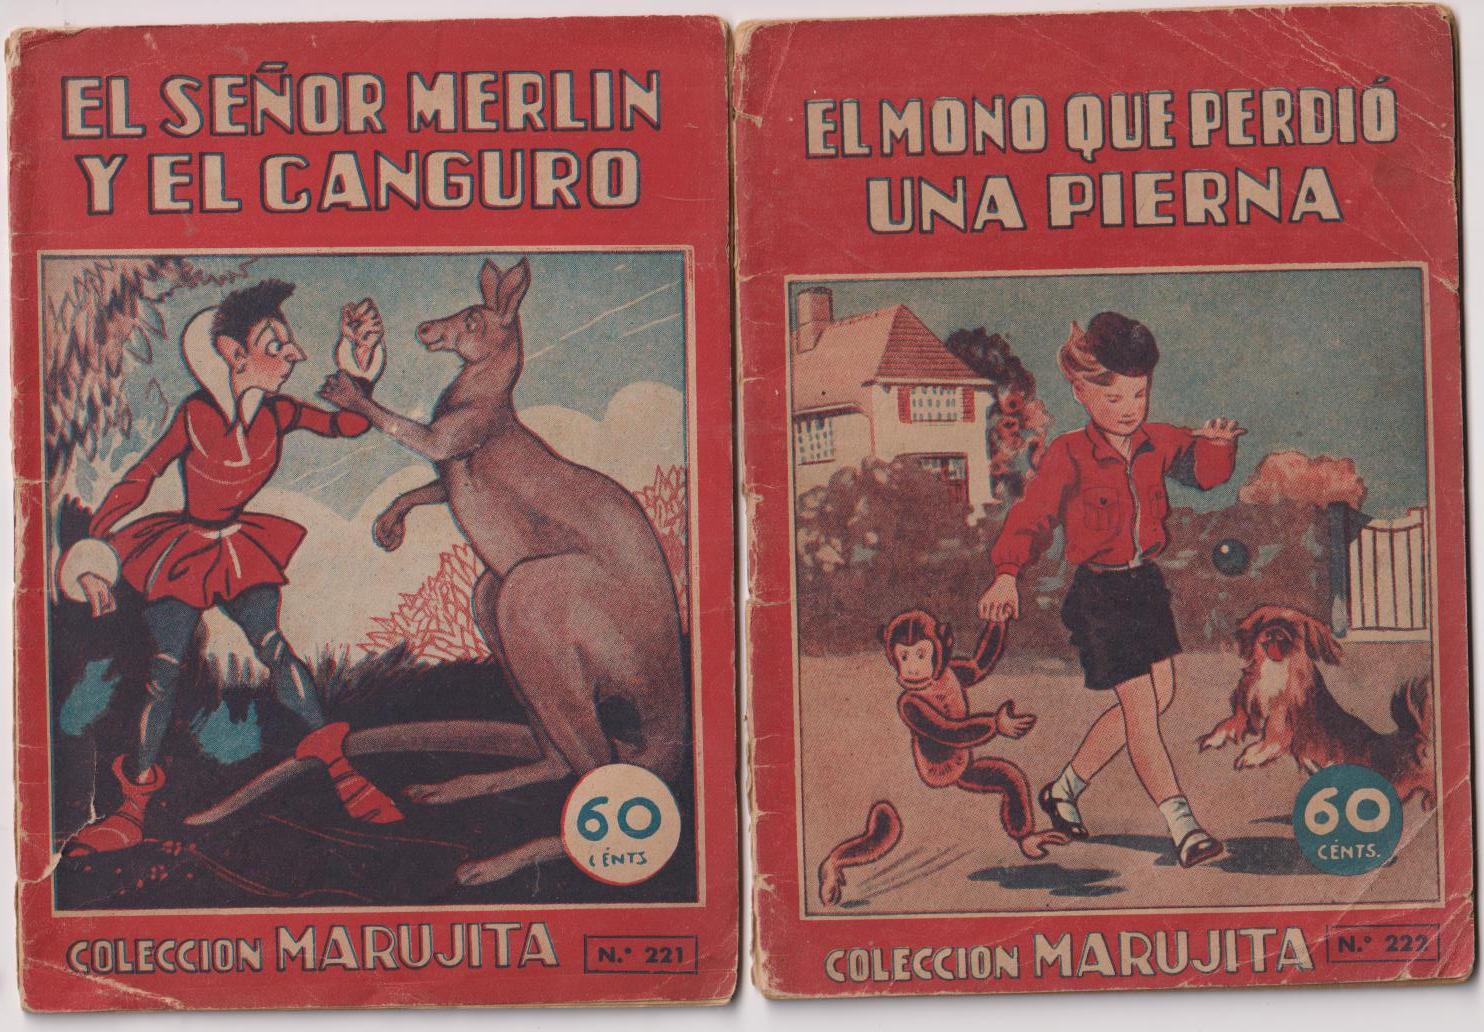 Marujita nº 221 y 222. El Señor Merlín y el canguro por J. Mallorquí y El mono que perdió una pierna. Molino 1943